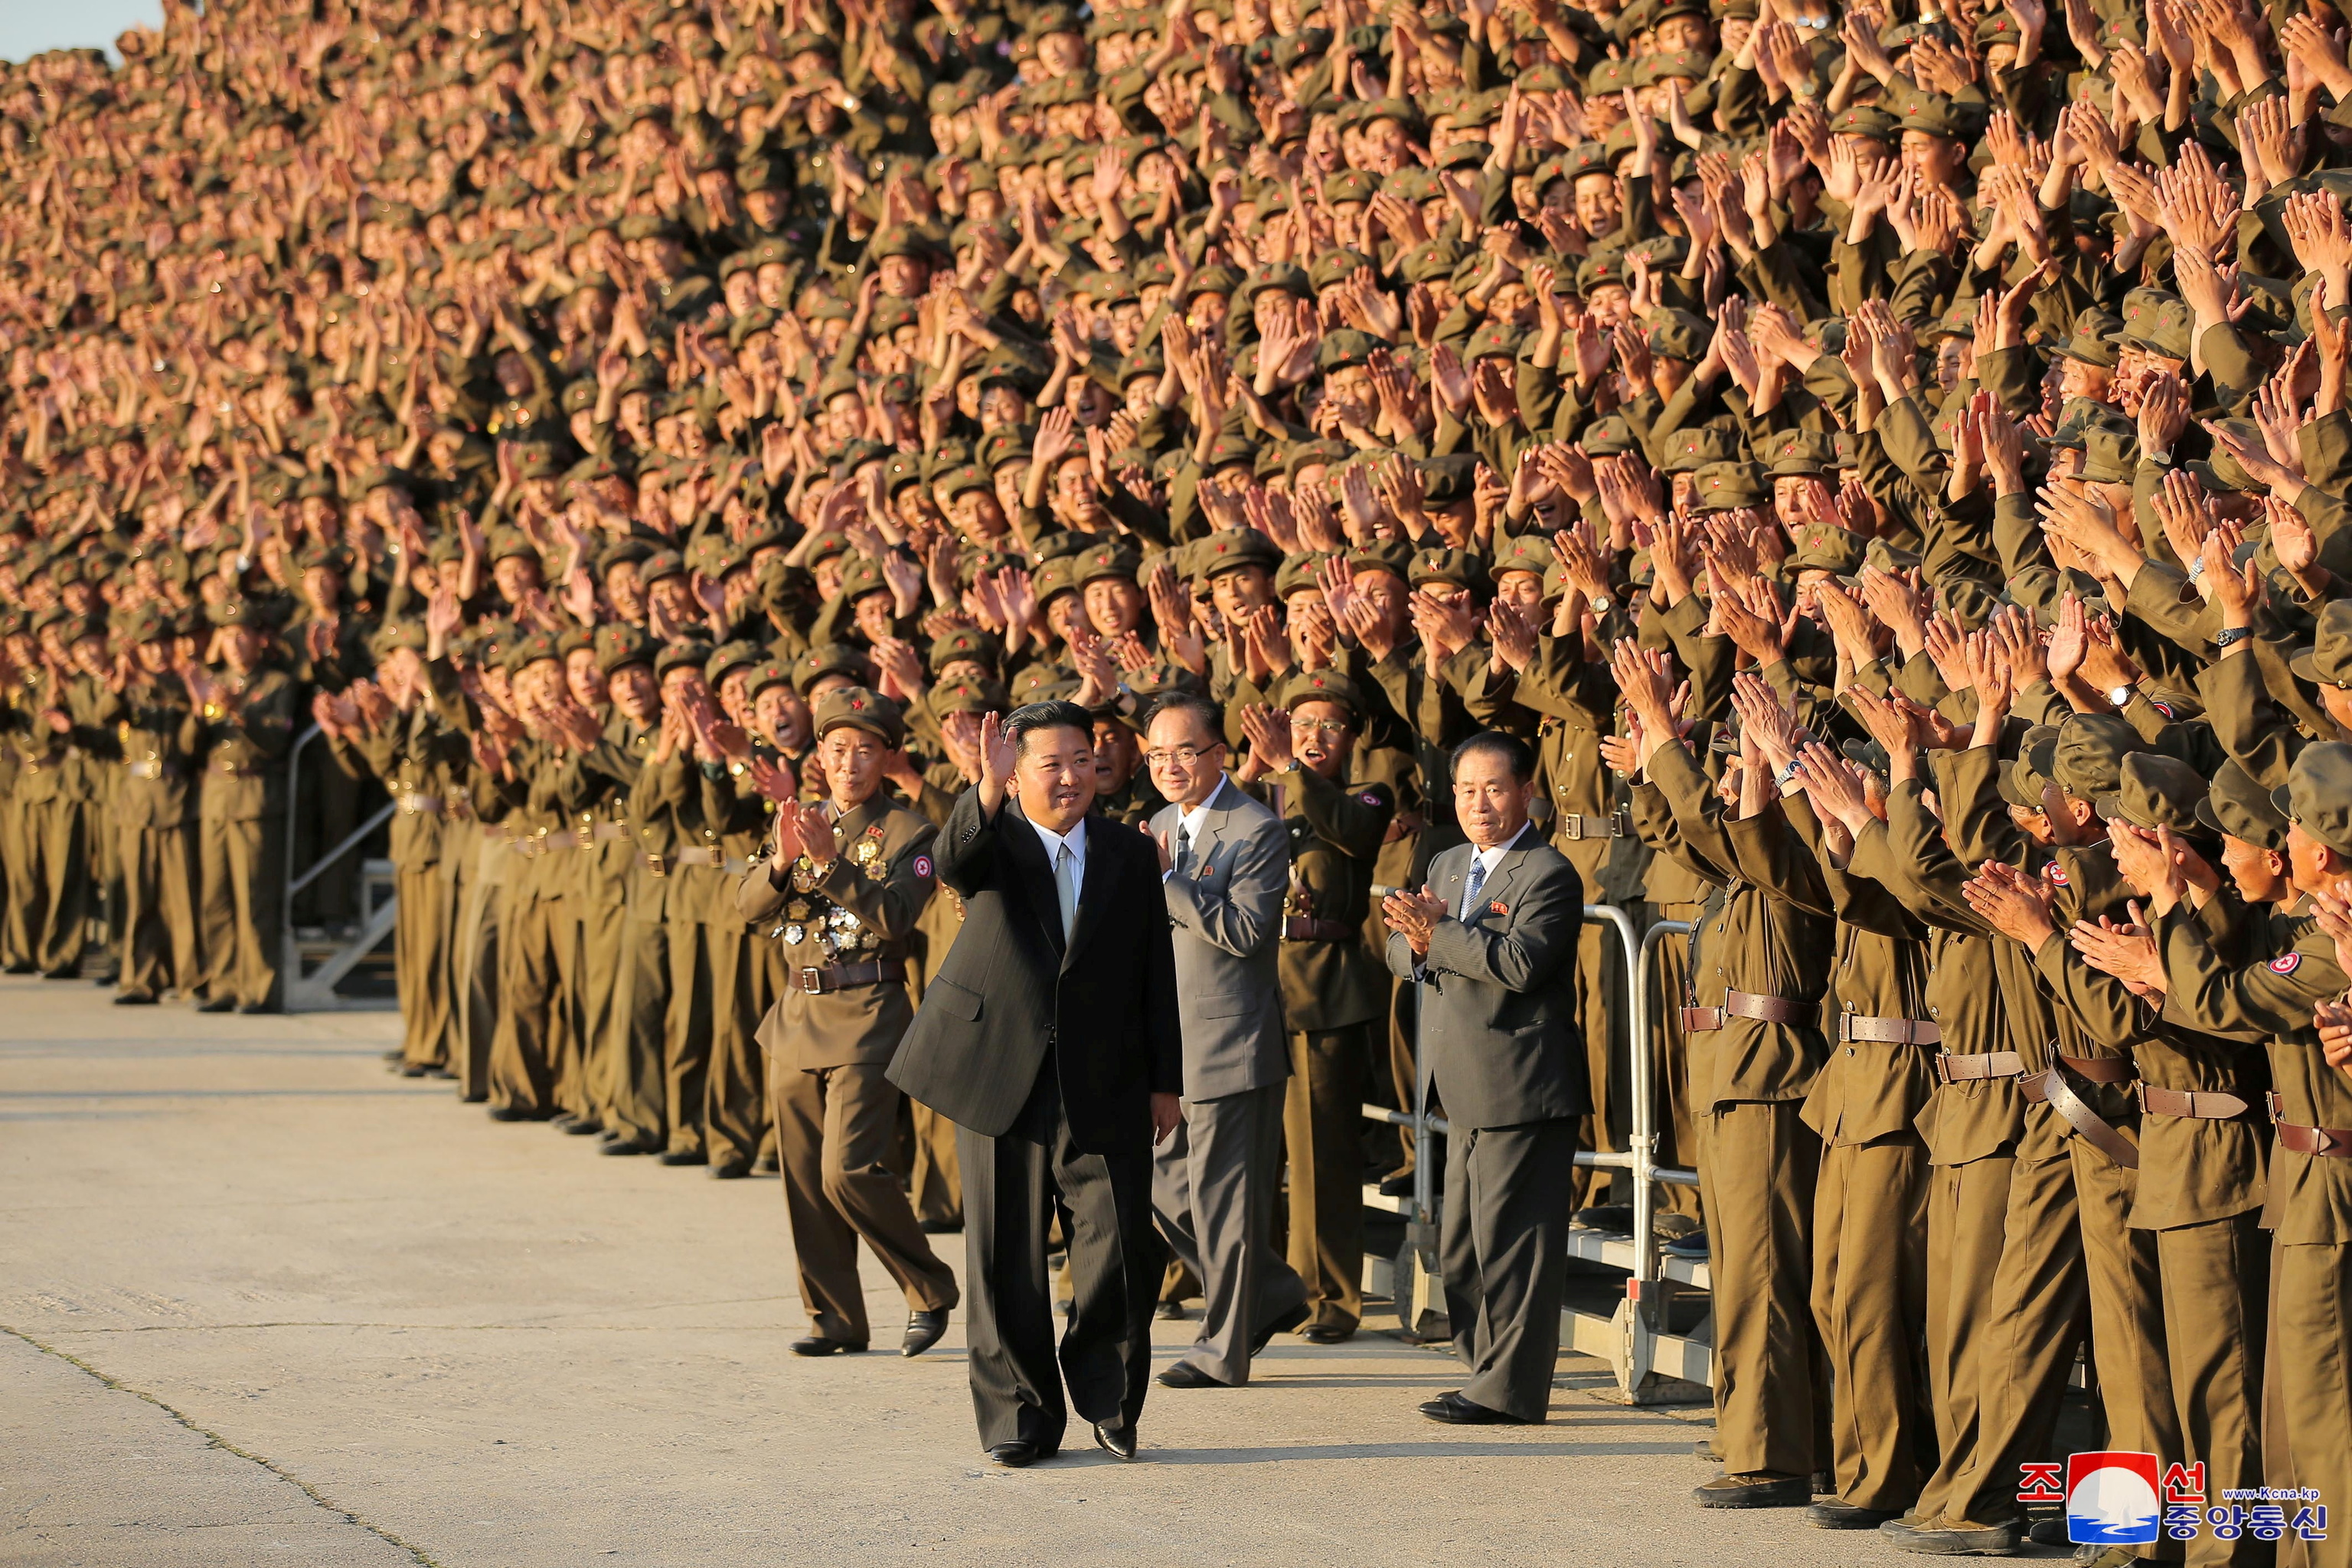 El lder norcoreano saluda al ejrcito en el 73 aniversario de la fundacin del pas, en una imagen sin fechar de la agencia KCNA.